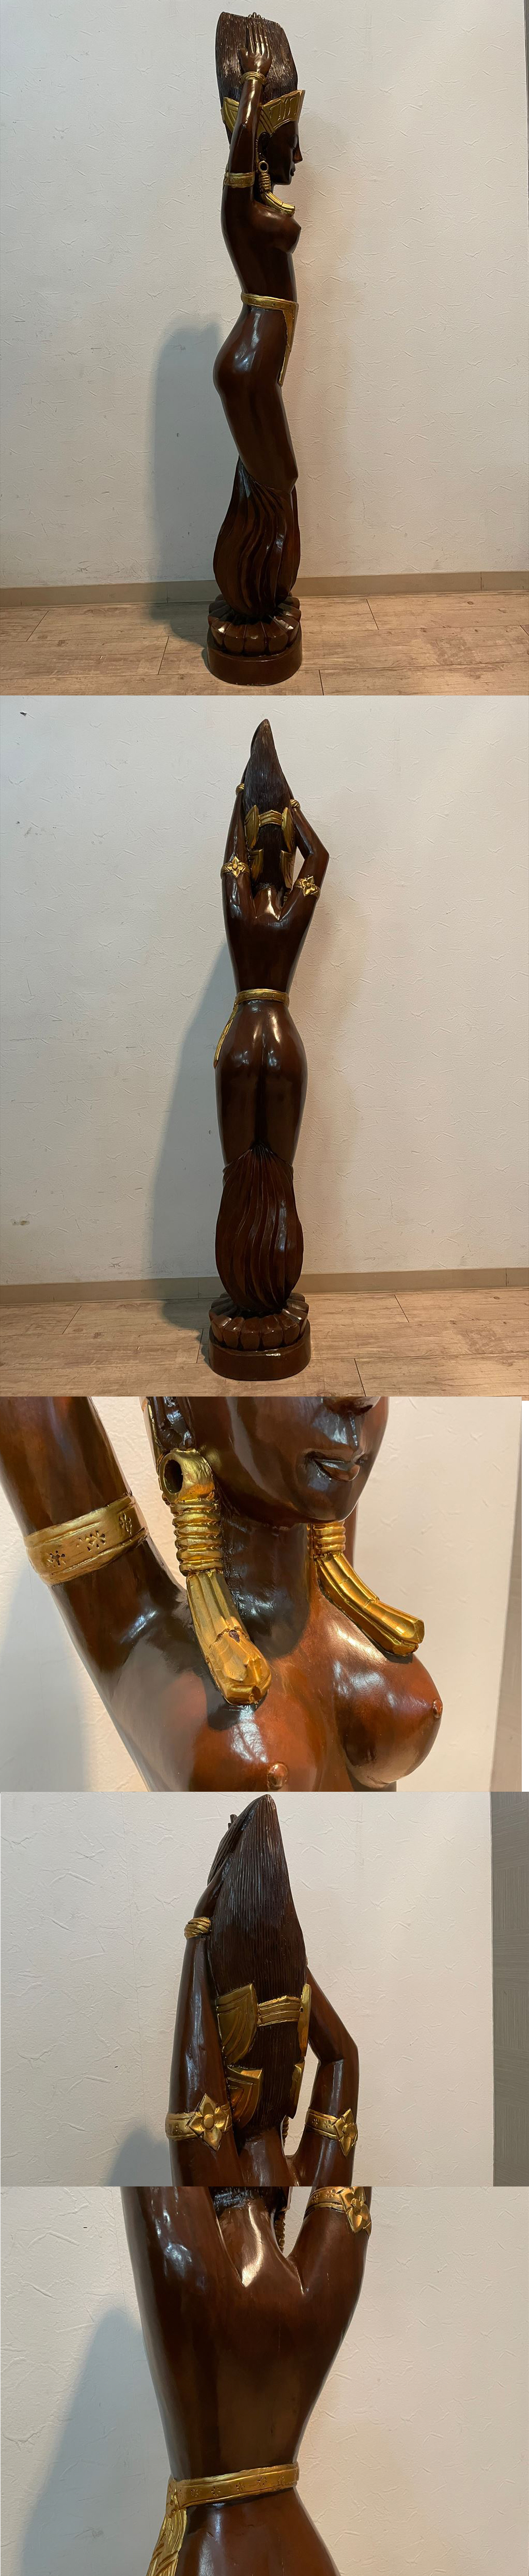 【セール人気SALE】存在感抜群 バリ島 美しい女性像 天然無垢材 幅27cm 高さ150cm 木彫り彫刻 東南アジア 女神像 美人像 人形 置物 オブジェ 民族工芸 オブジェ